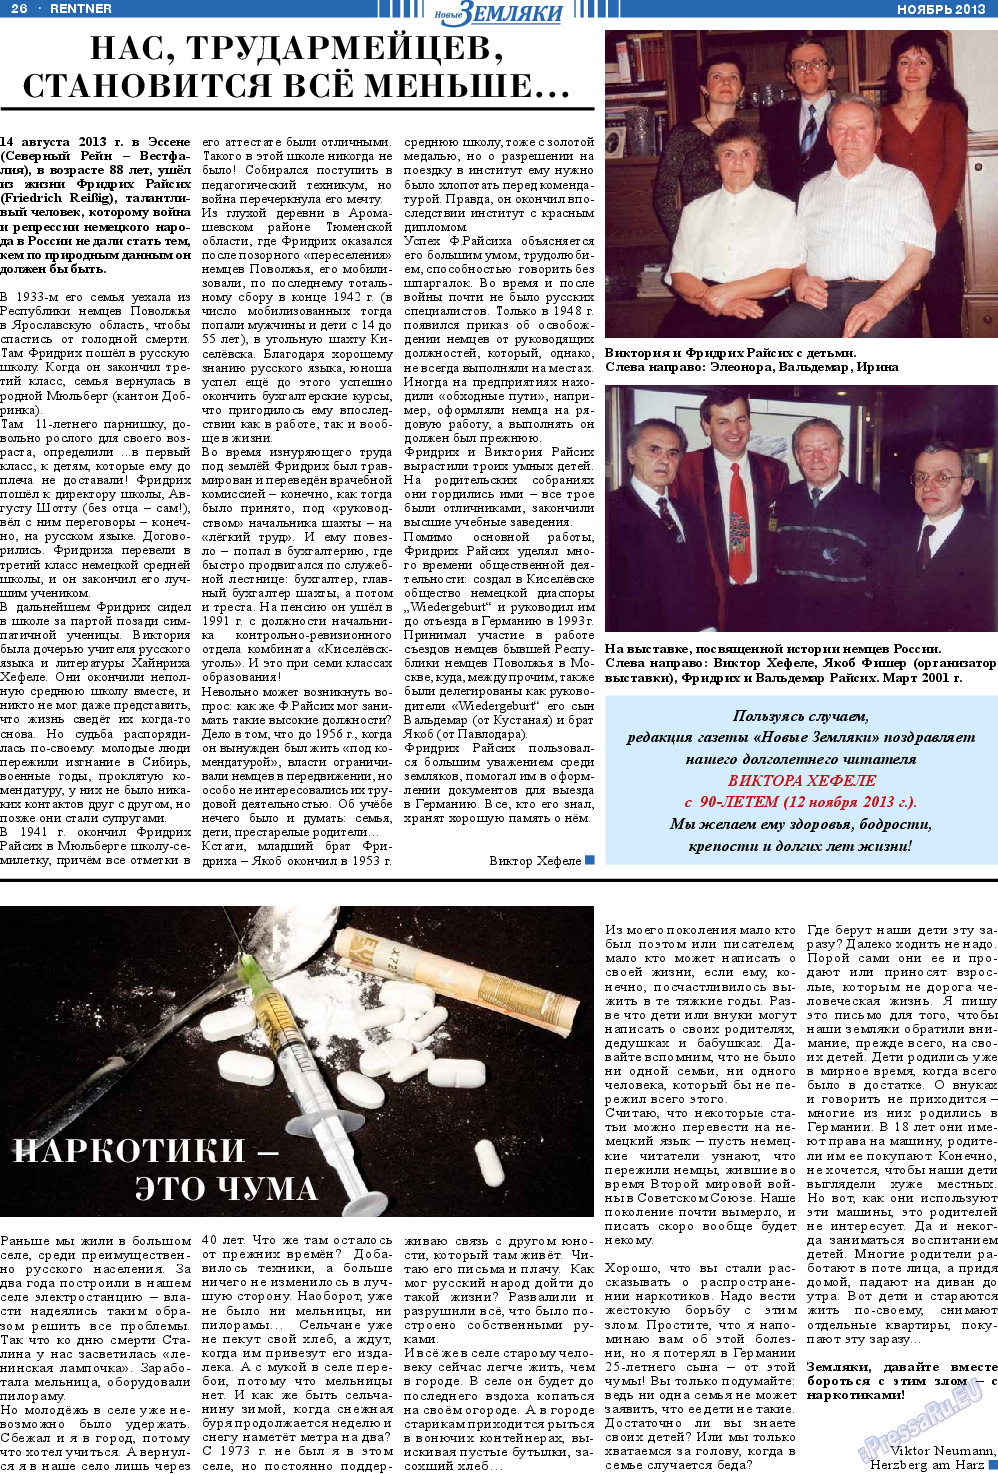 Новые Земляки, газета. 2013 №11 стр.26